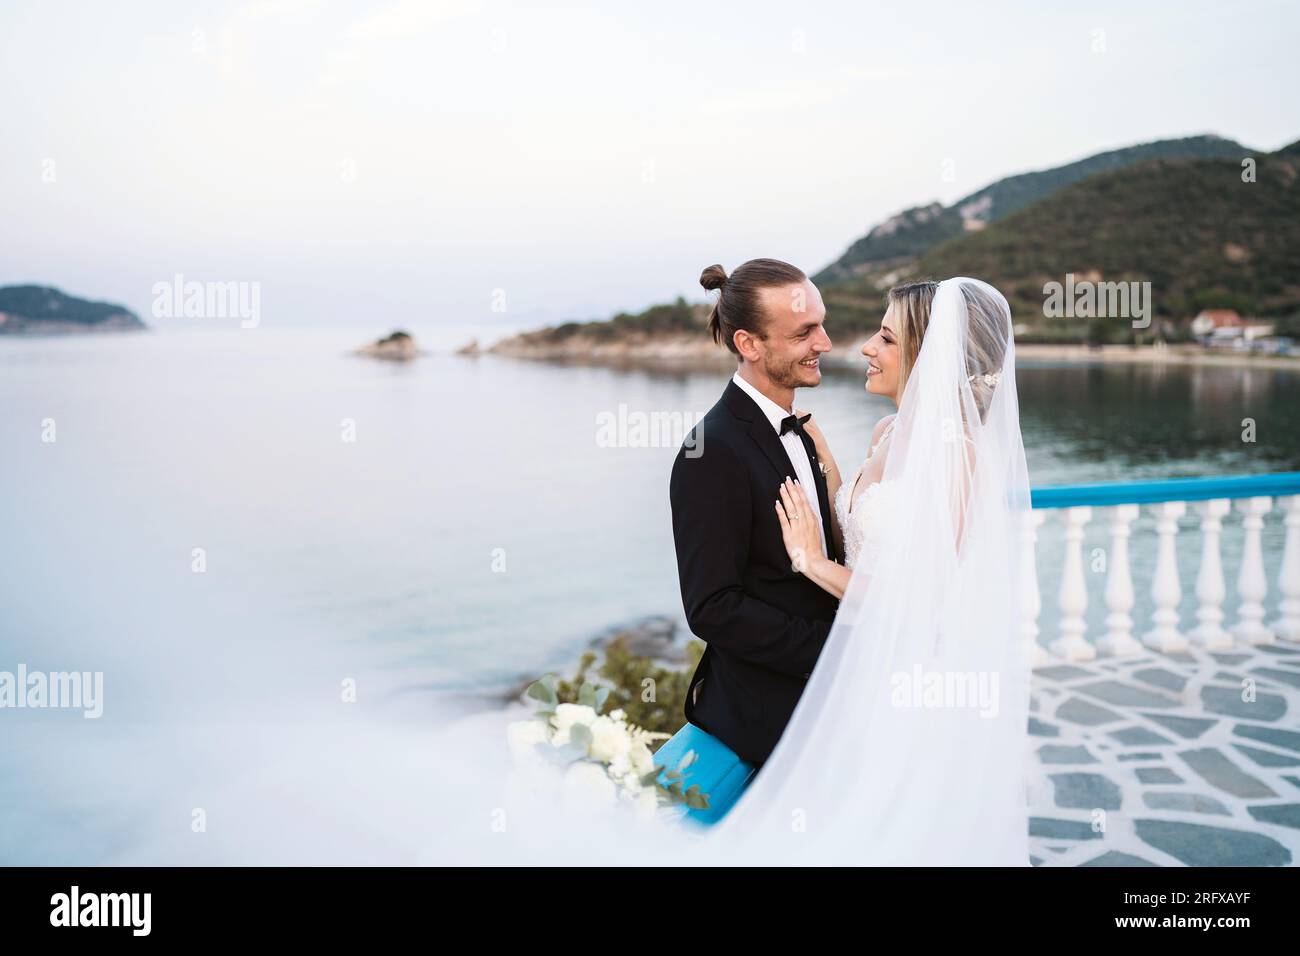 Ein liebevolles Brautpaar genießt die Hochzeit mit Meeresblick Foto Stock